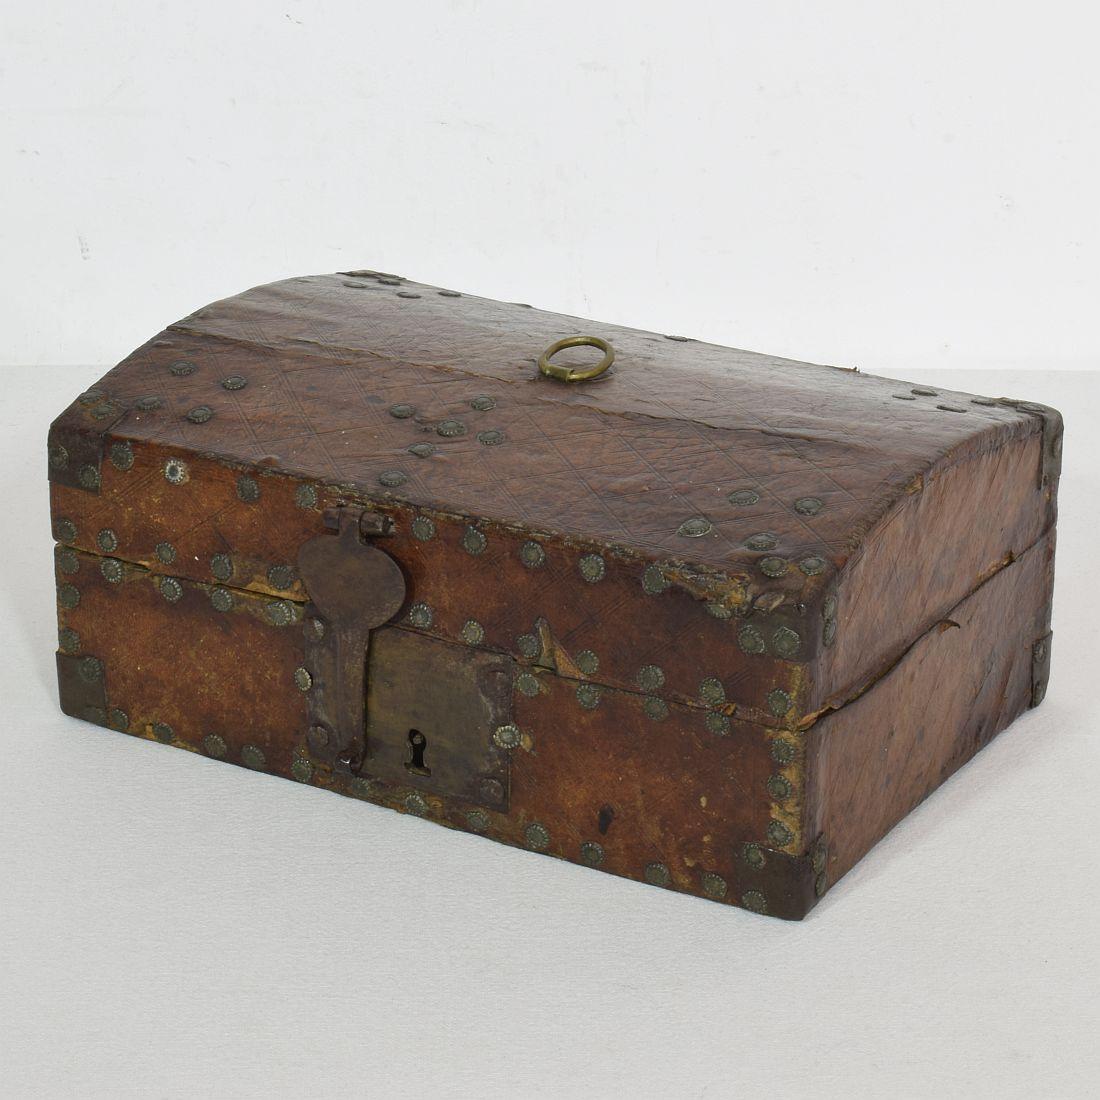 Extrem alte Schachtel, die mit Leder und Metallverzierungen überzogen ist. 
Seltener Fund.
Frankreich, um 1600-1700
Verwittert und einige Verluste.